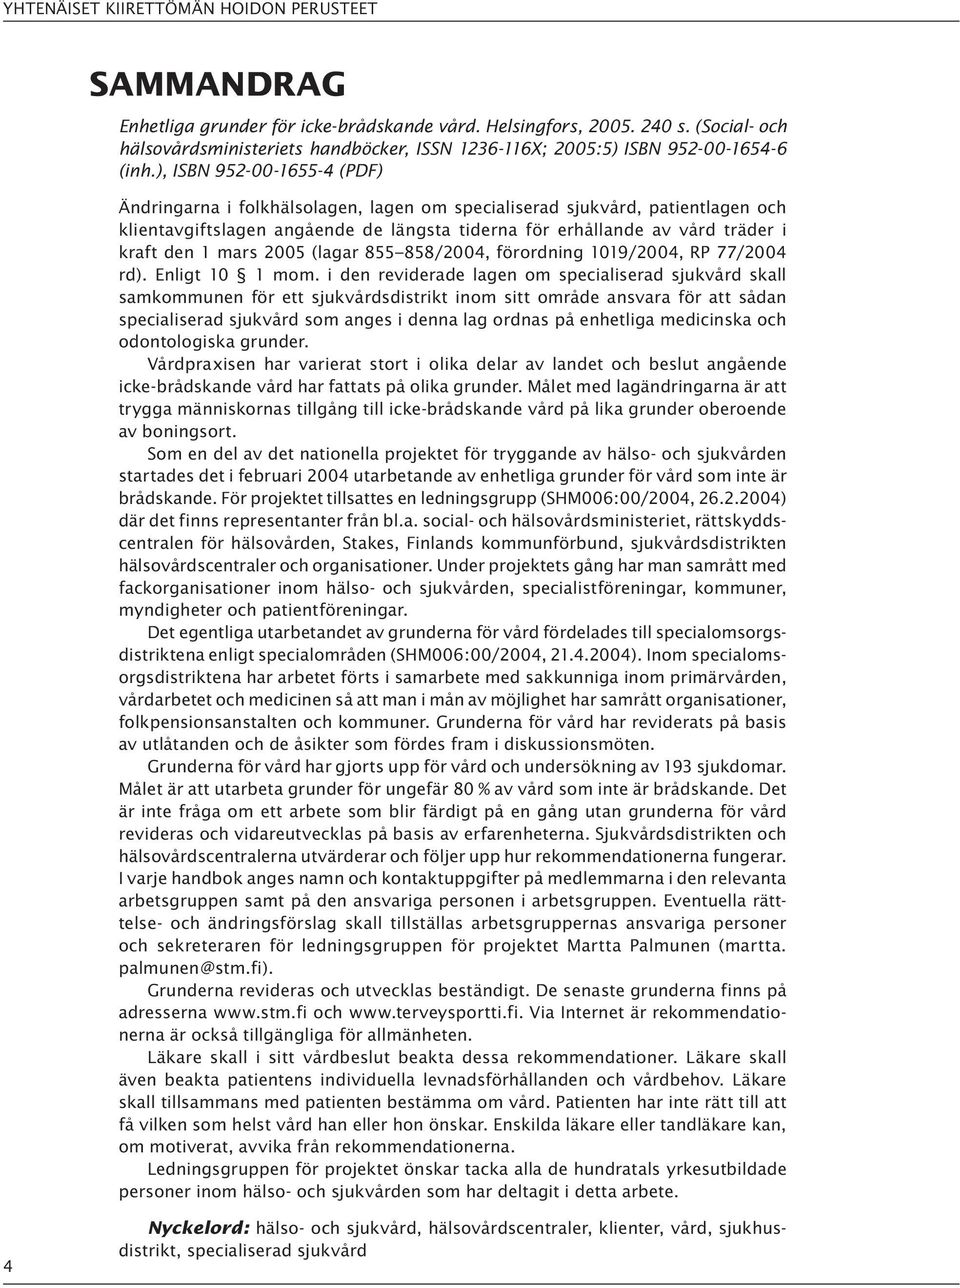 ), ISBN 952-00-1655-4 (PDF) Ändringarna i folkhälsolagen, lagen om specialiserad sjukvård, patientlagen och klientavgiftslagen angående de längsta tiderna för erhållande av vård träder i kraft den 1